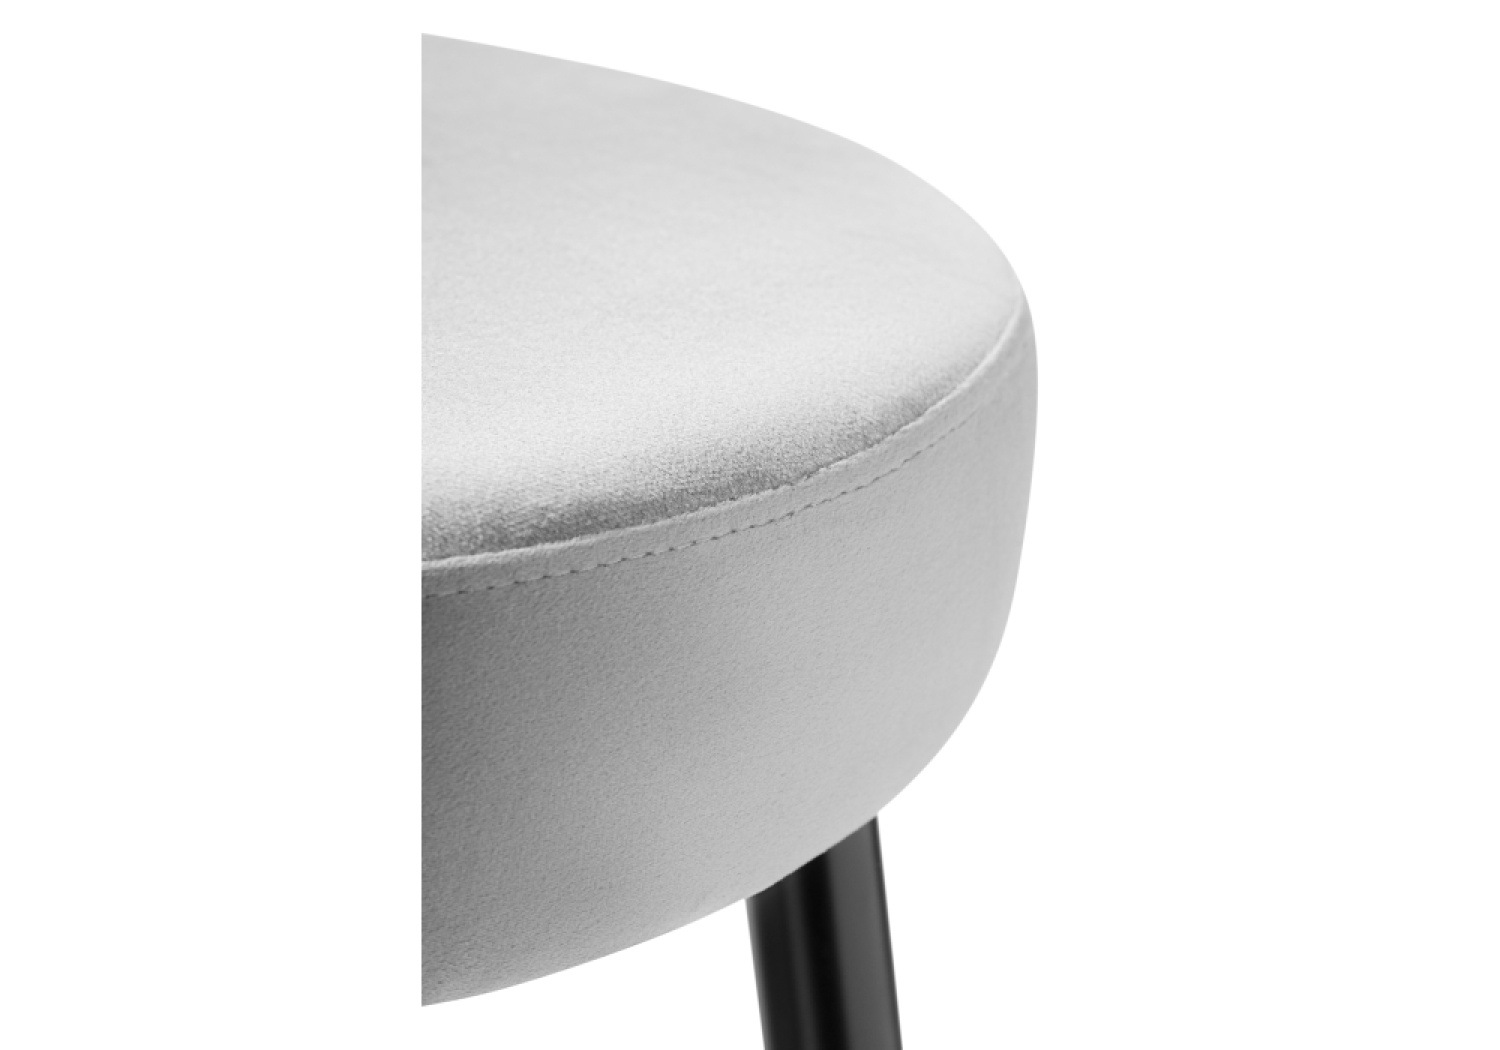 Барный стул Plato light gray